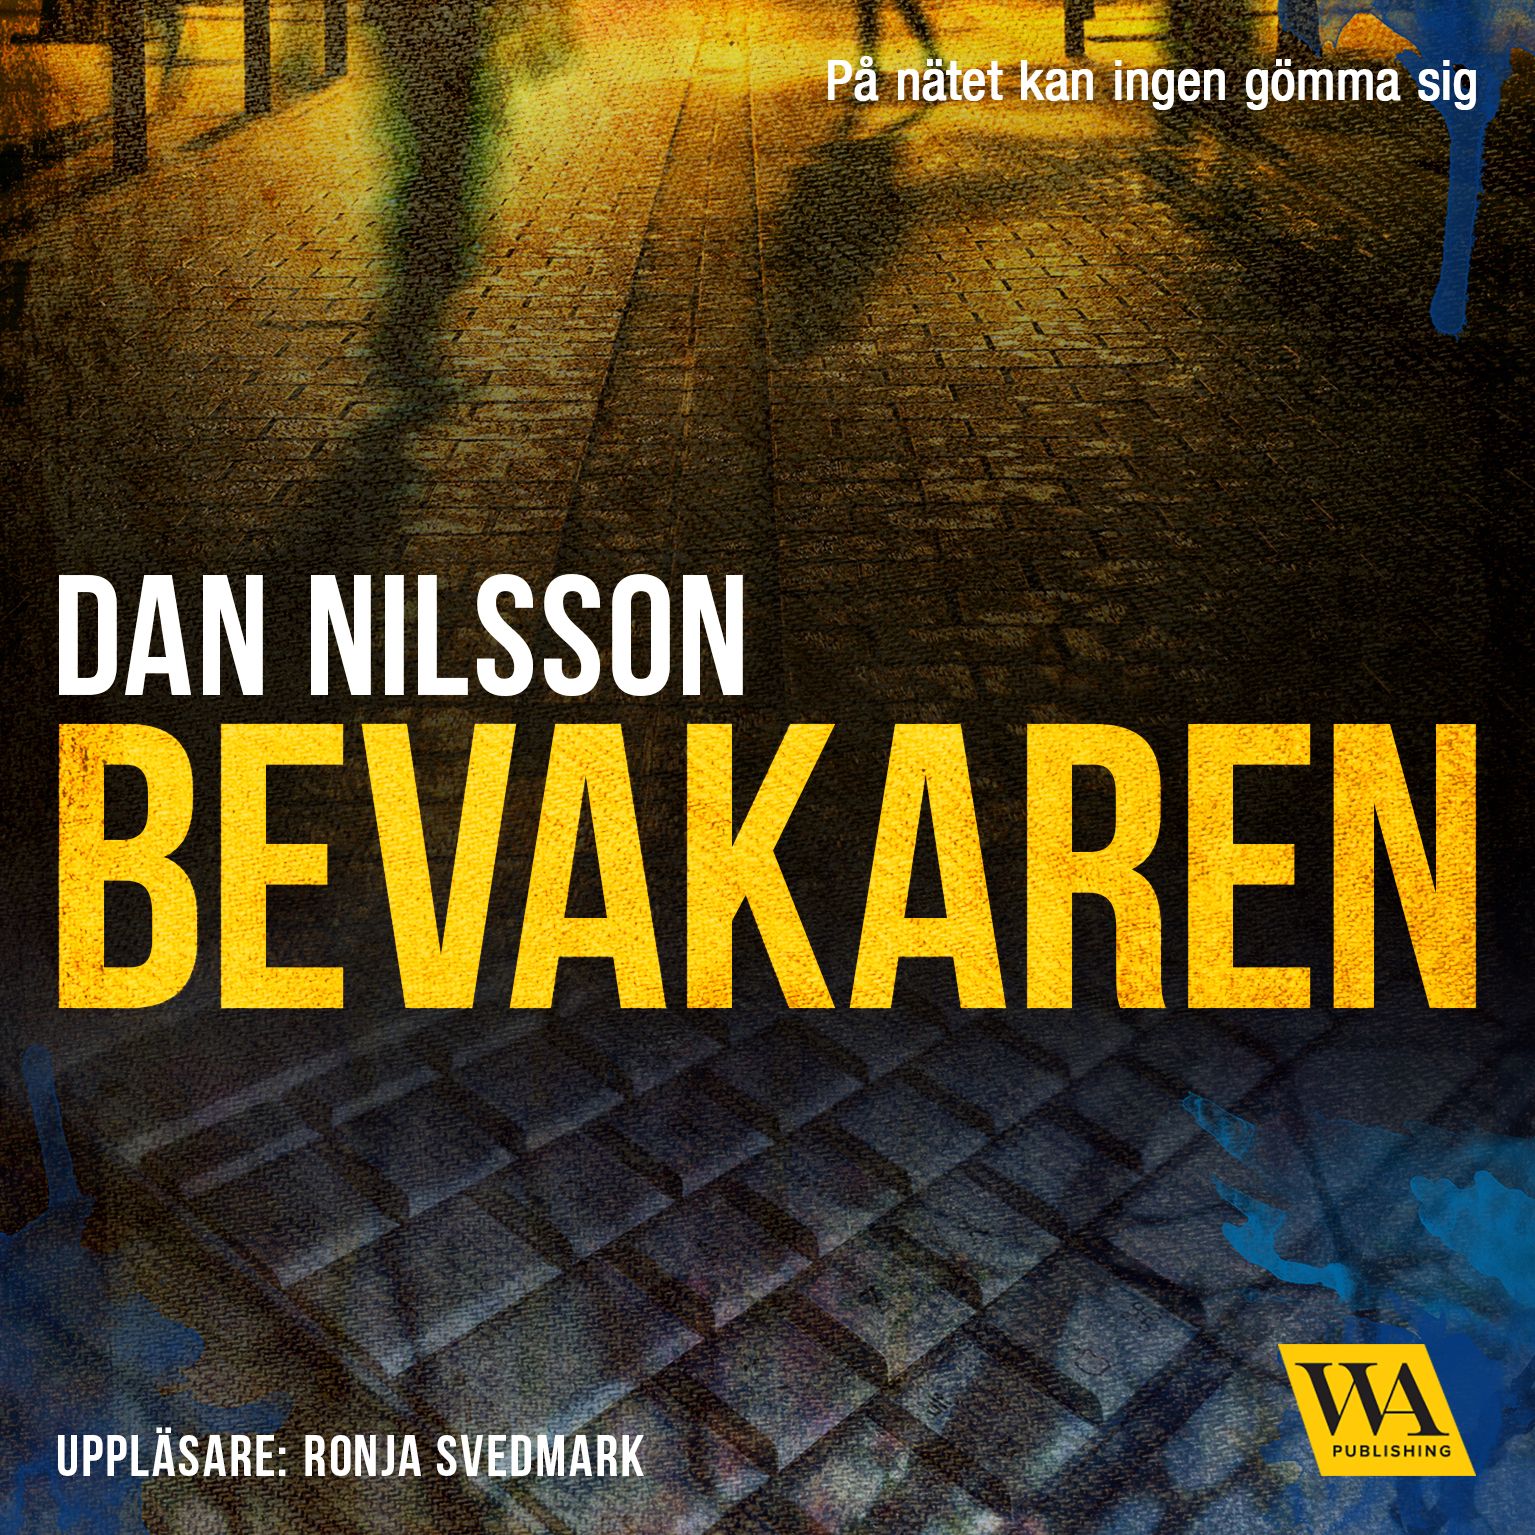 Bevakaren, audiobook by Dan Nilsson